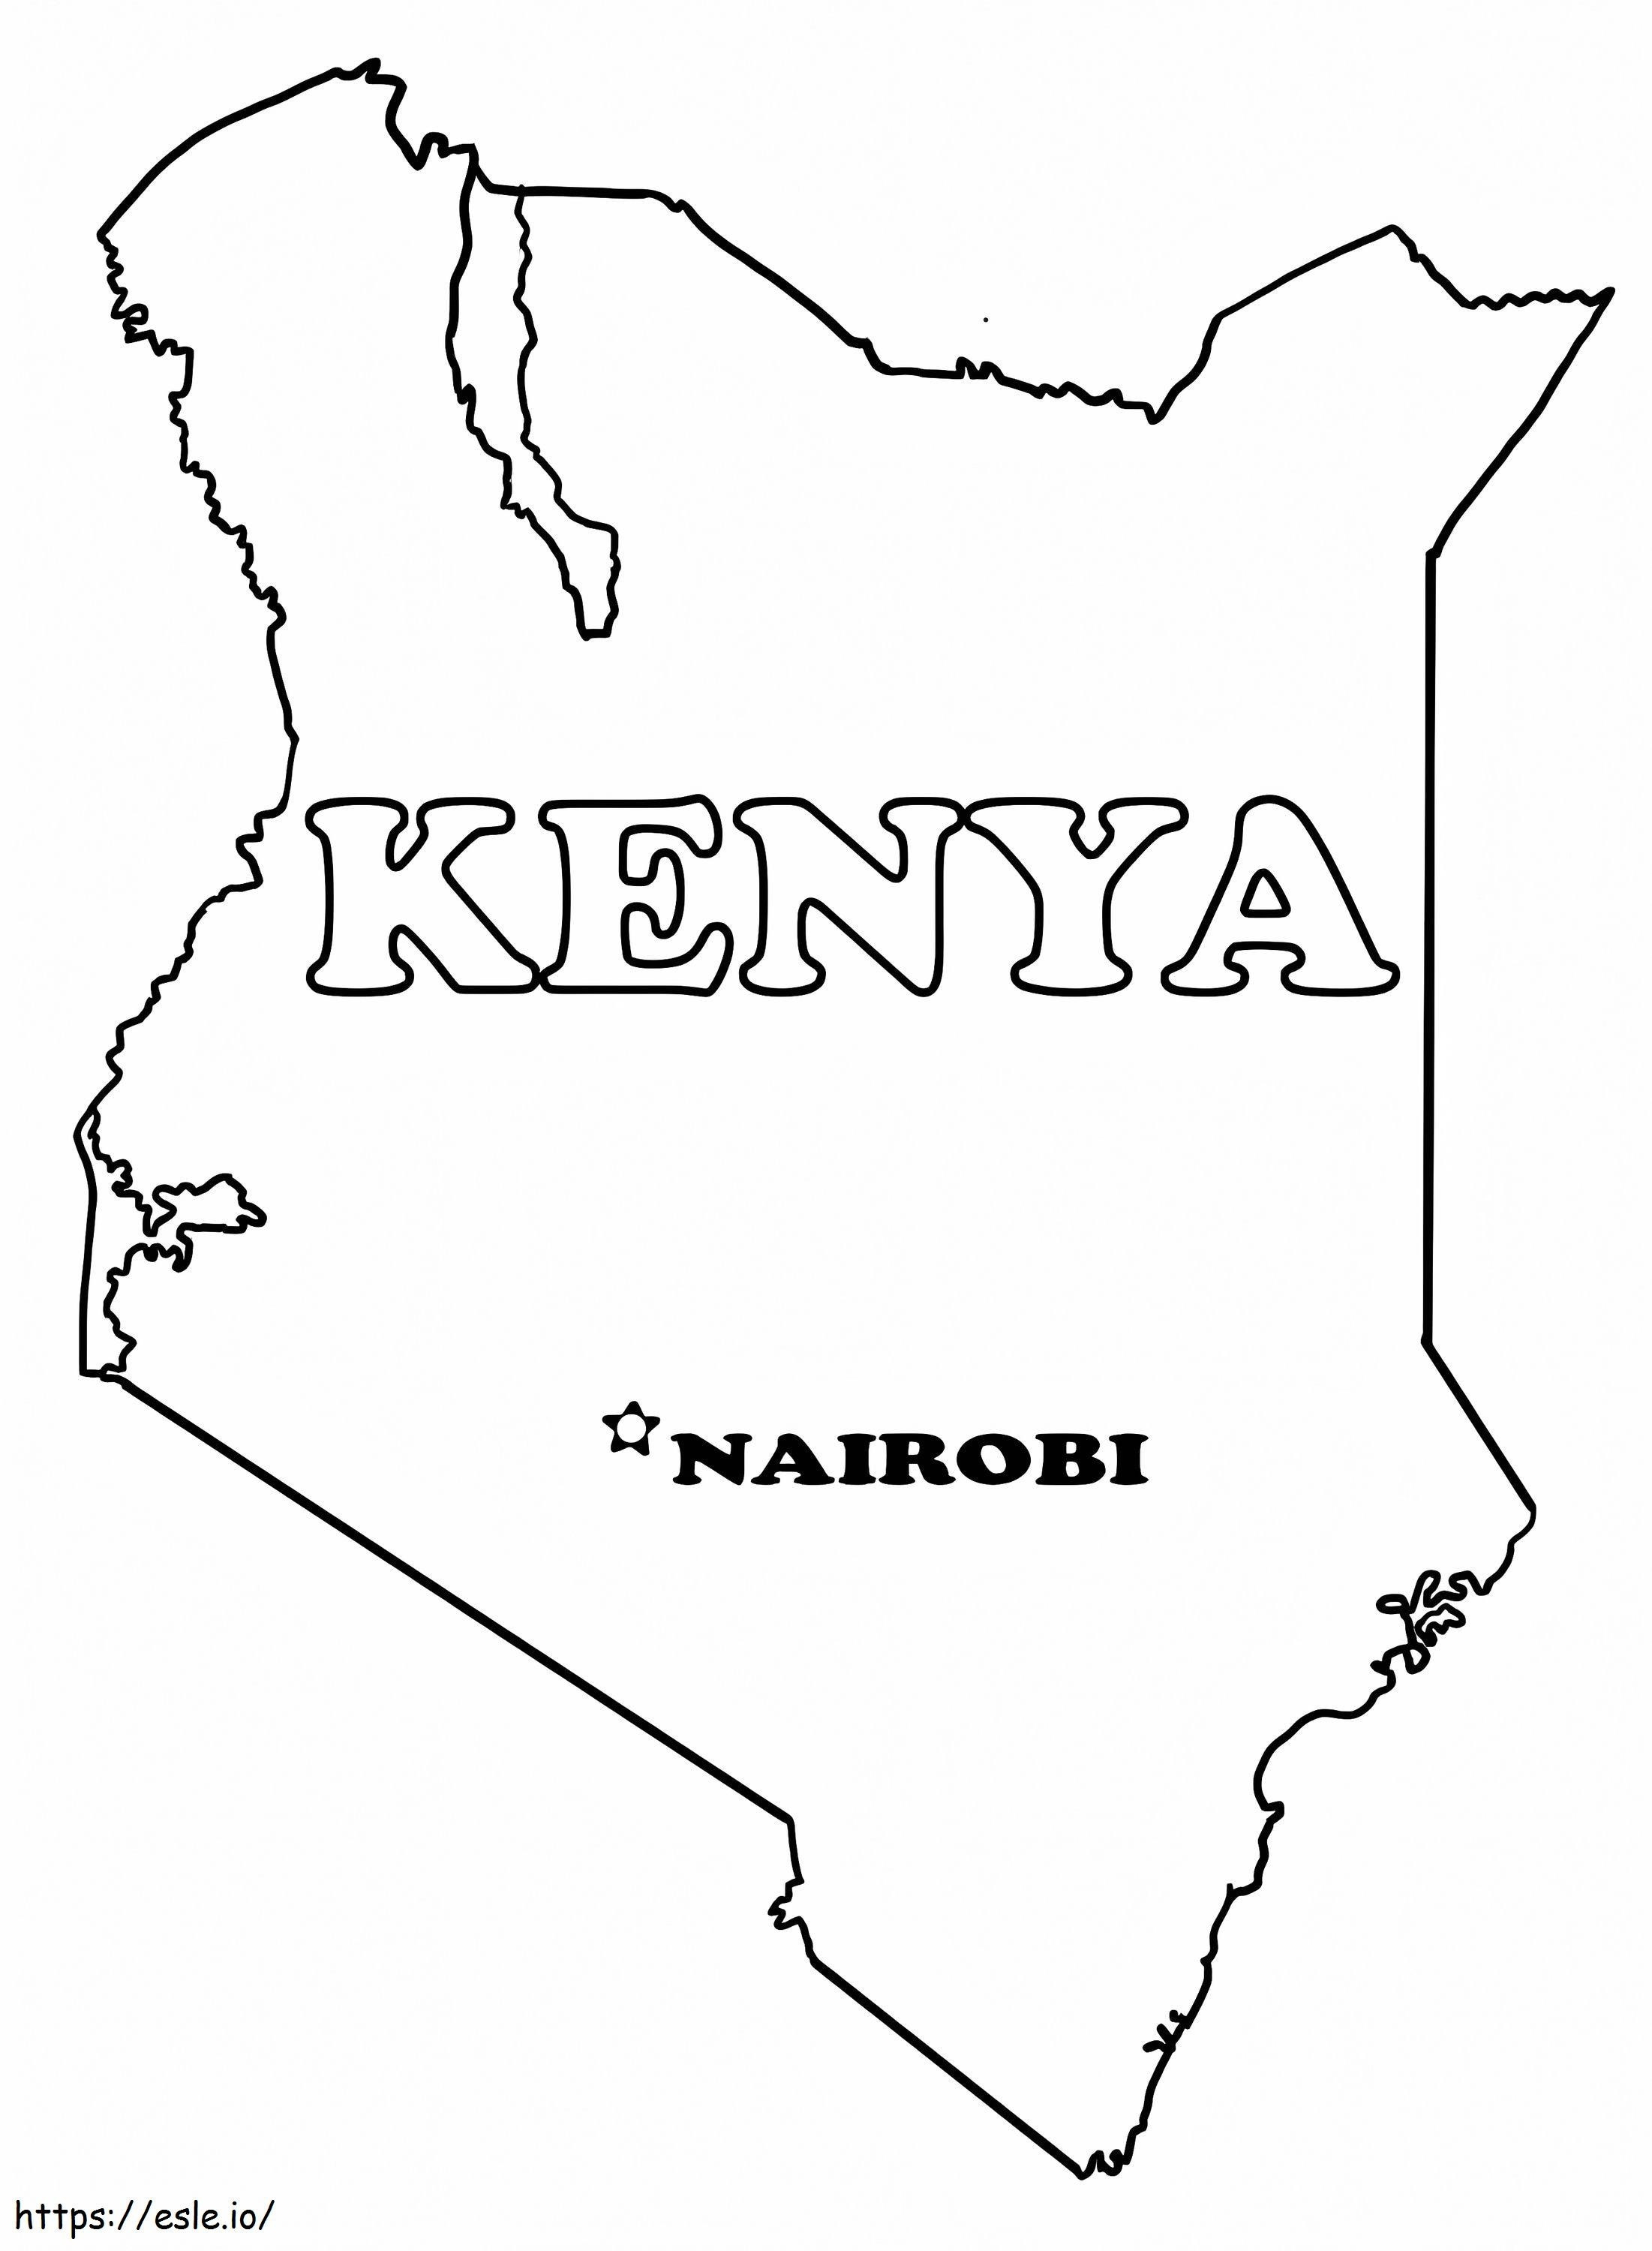 Kenya Haritası boyama